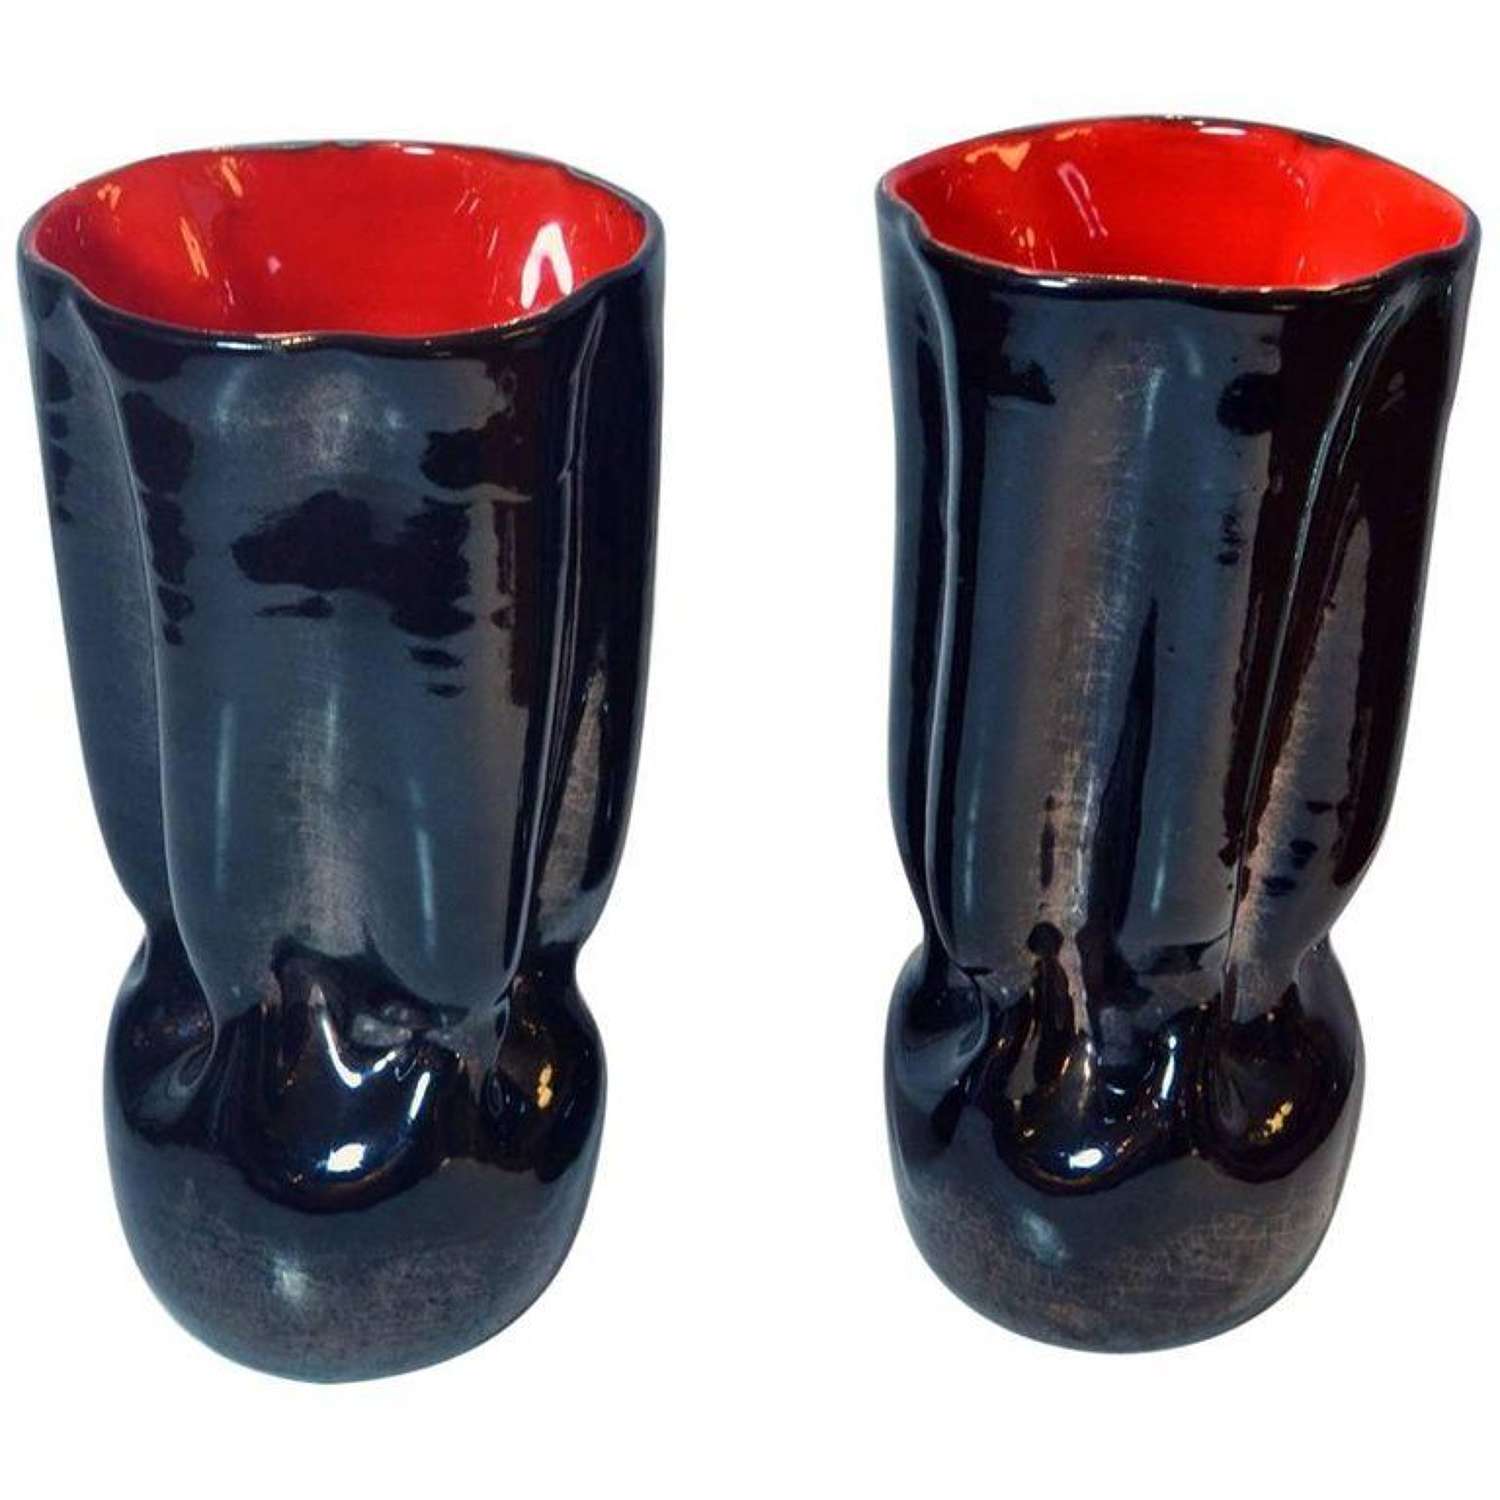 Mid century Pair of Black & Red Ceramic Vases